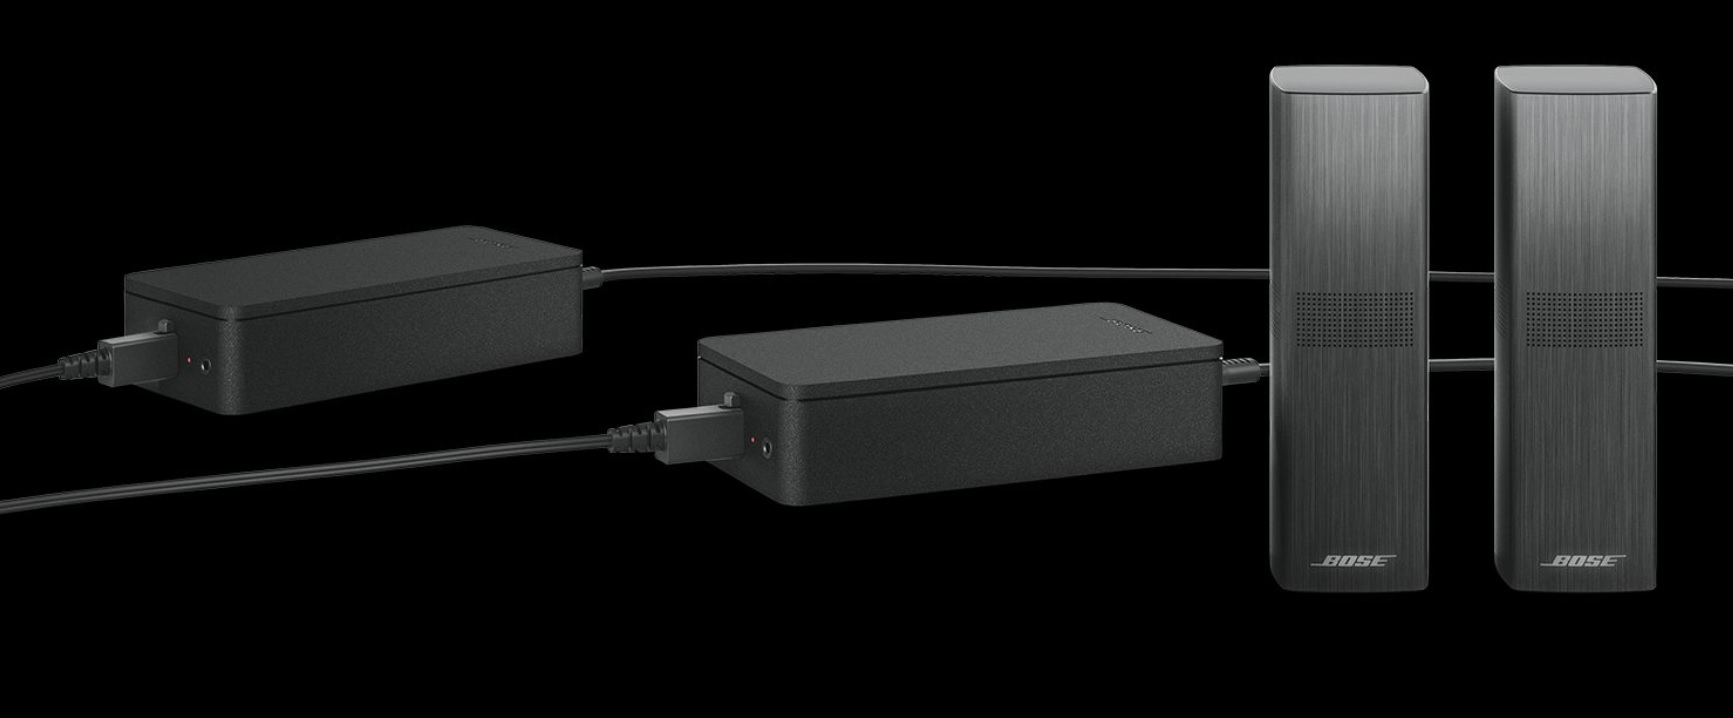 Bose Surround Speakers 700 czarne | Autoryzowany Dealer